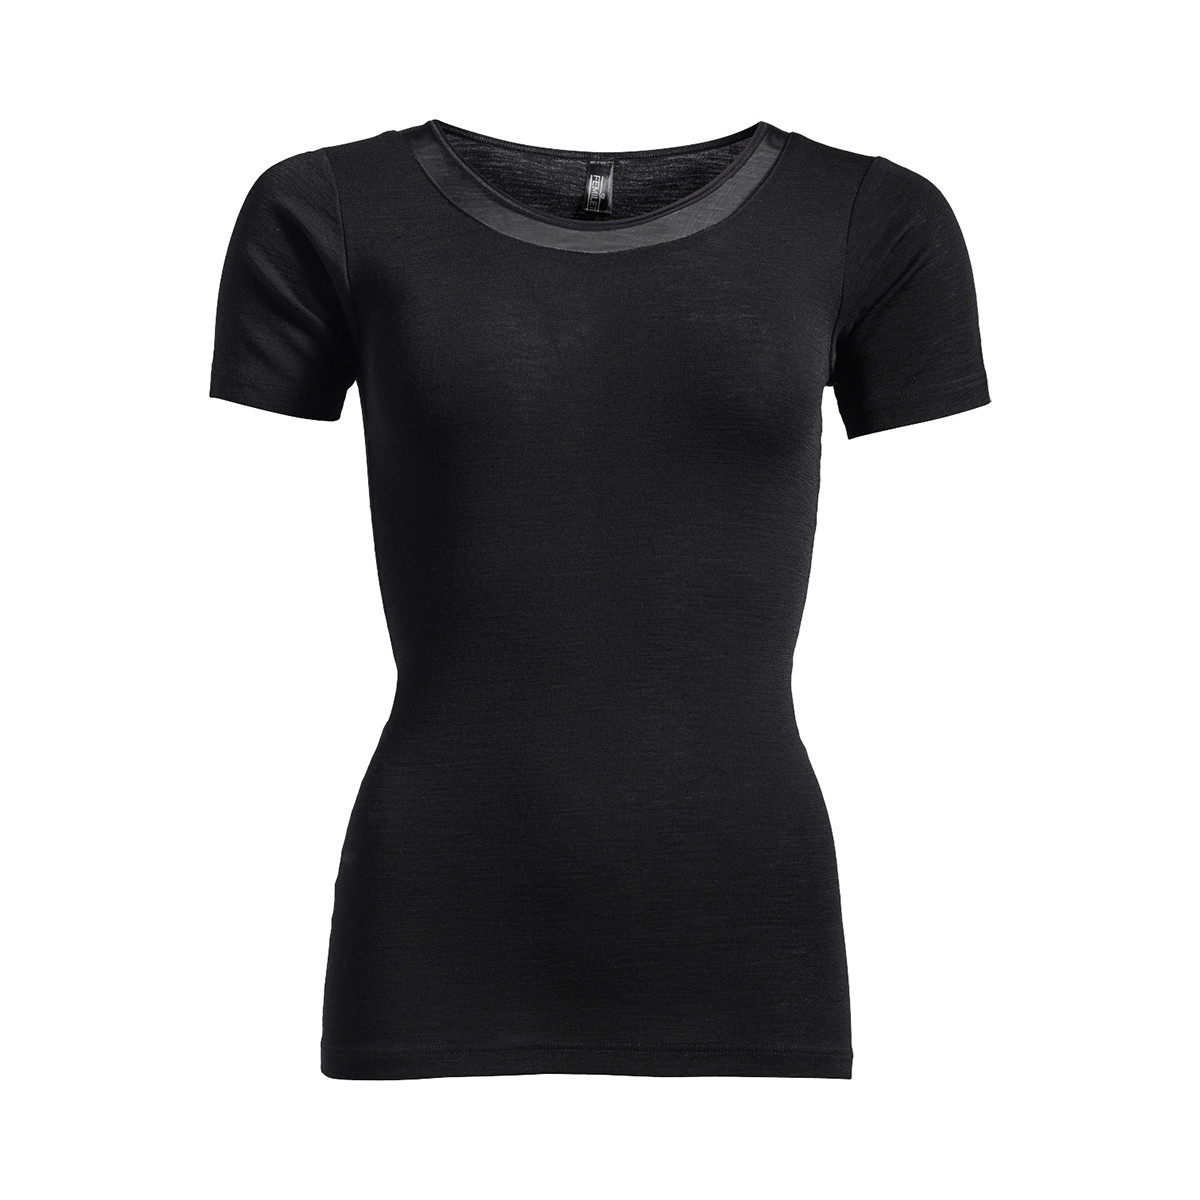 Femilet Juliana T-shirt, Farve: Sort, Størrelse: 36, Dame